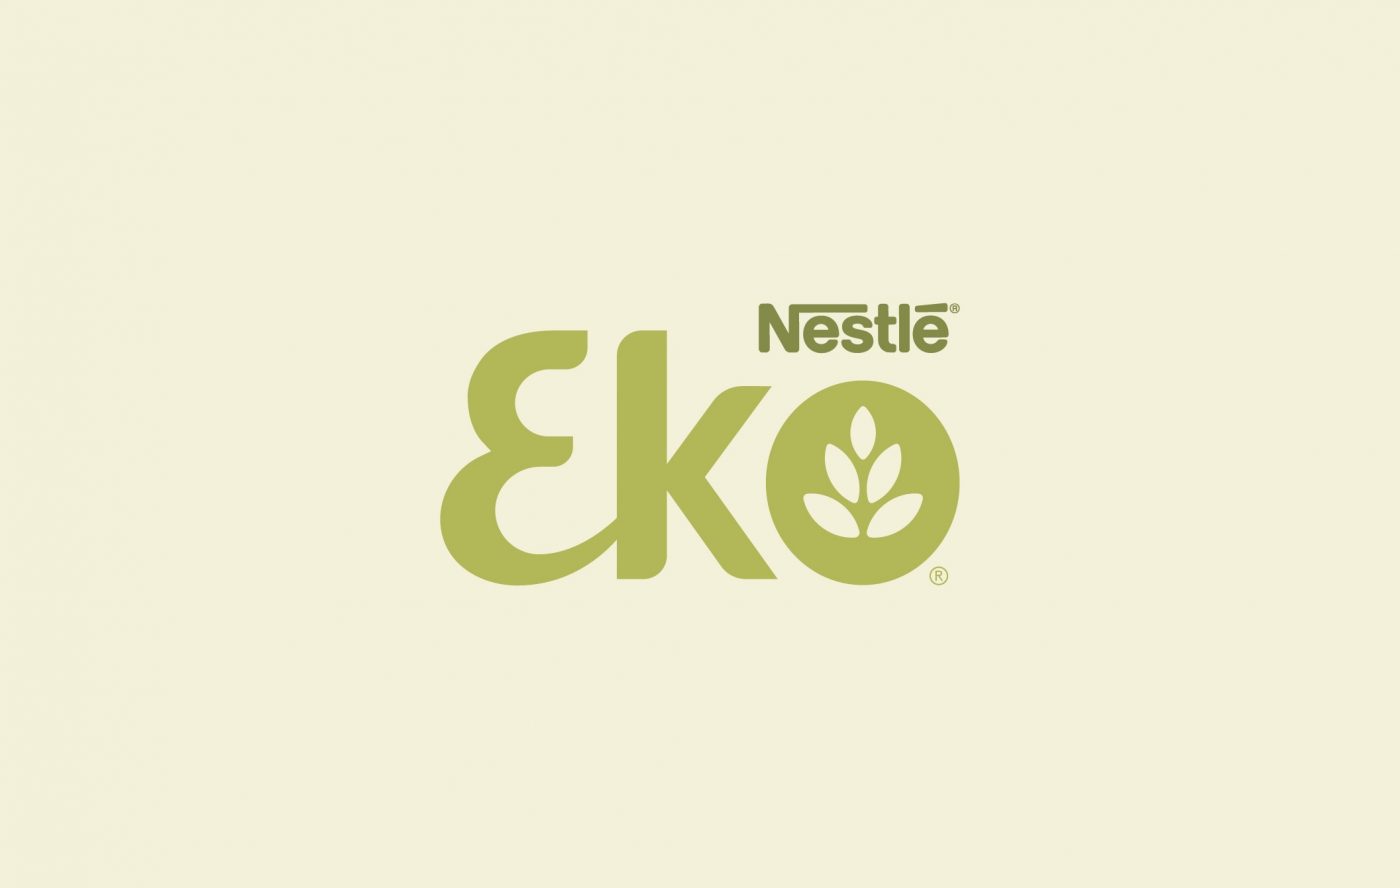 Nestlé EKO affiche principale et logo